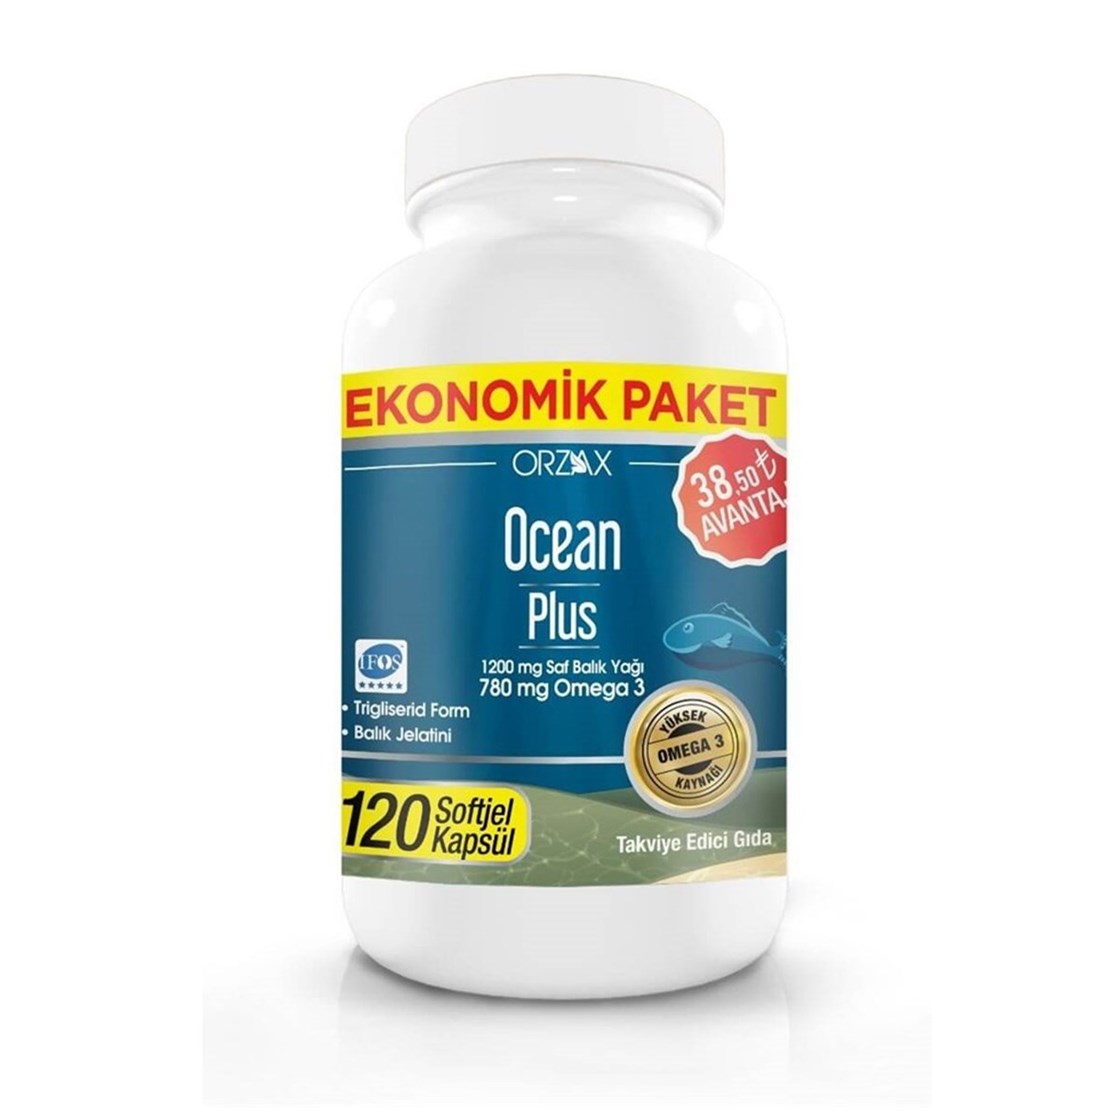 Orzax Ocean Plus Omega-3 120 Kapsül | Ekonomik Paket